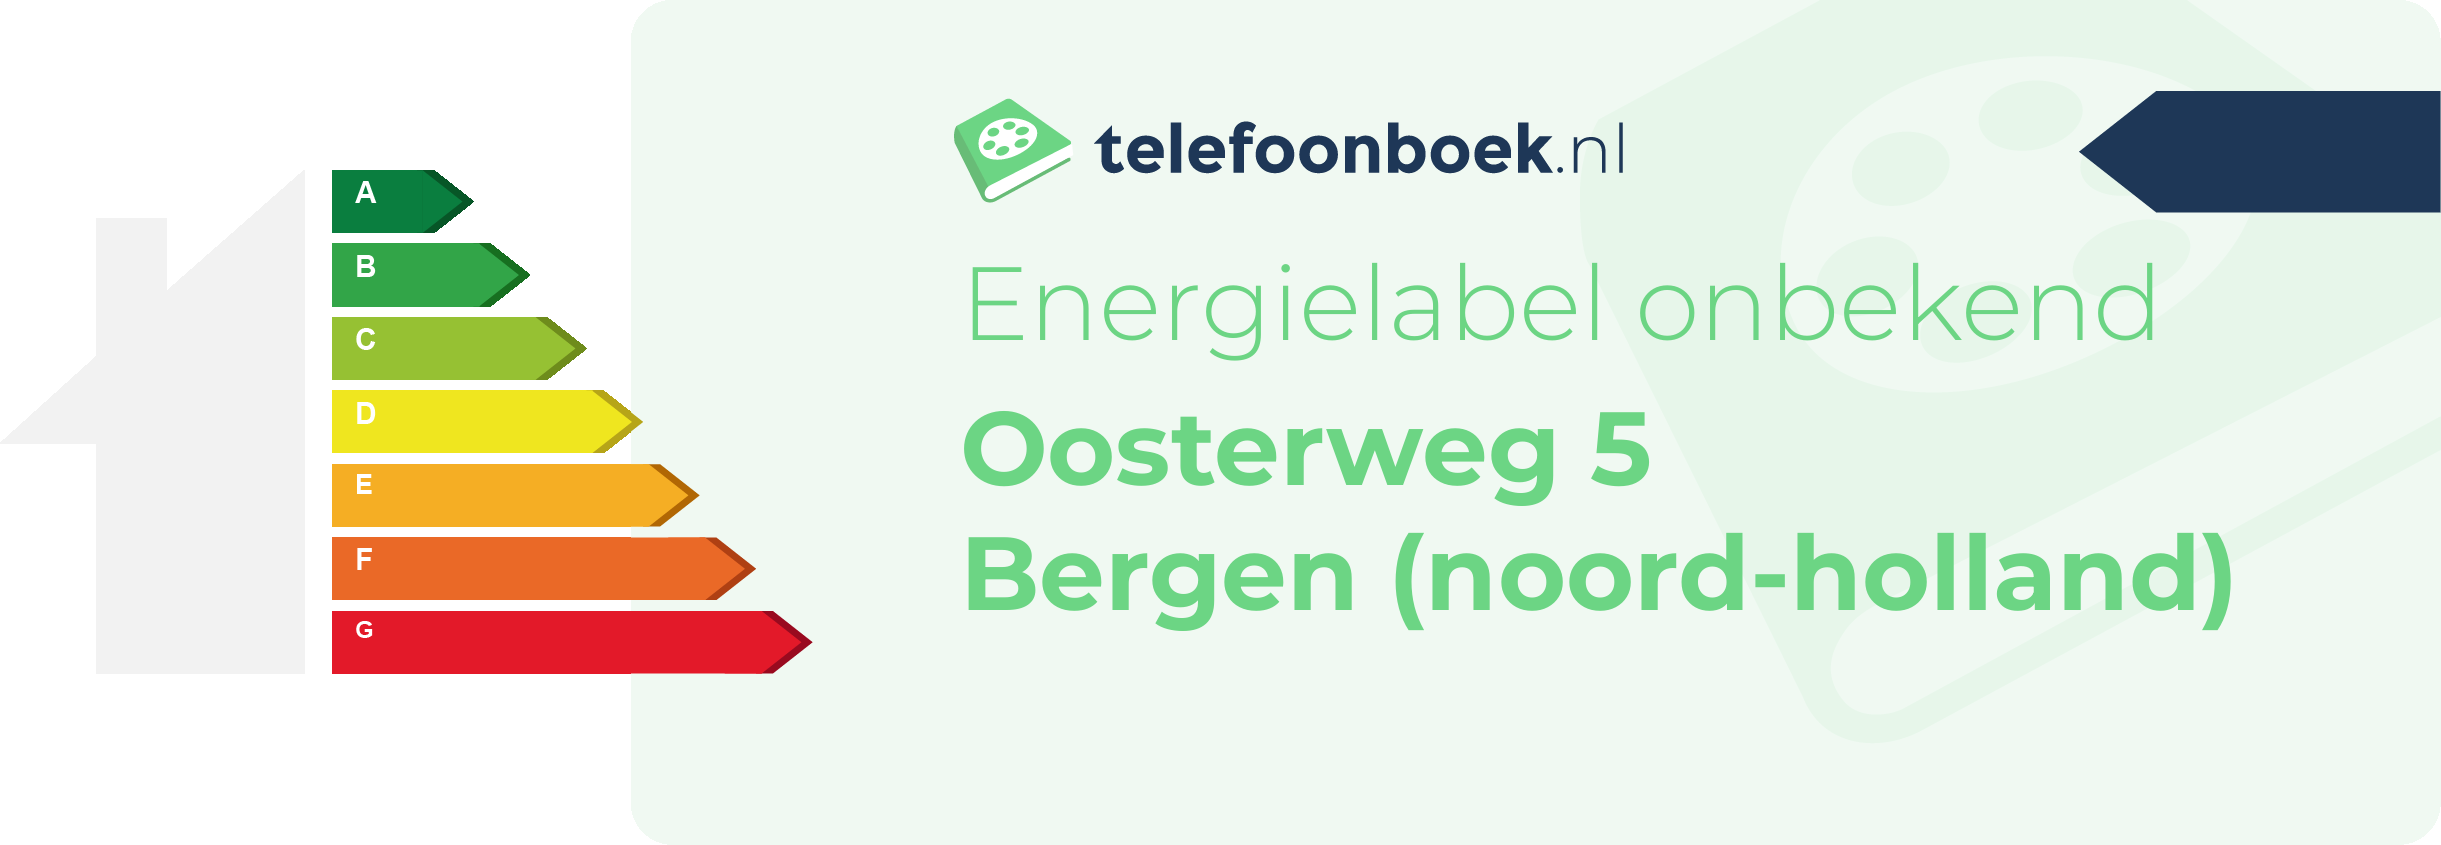 Energielabel Oosterweg 5 Bergen (Noord-Holland)